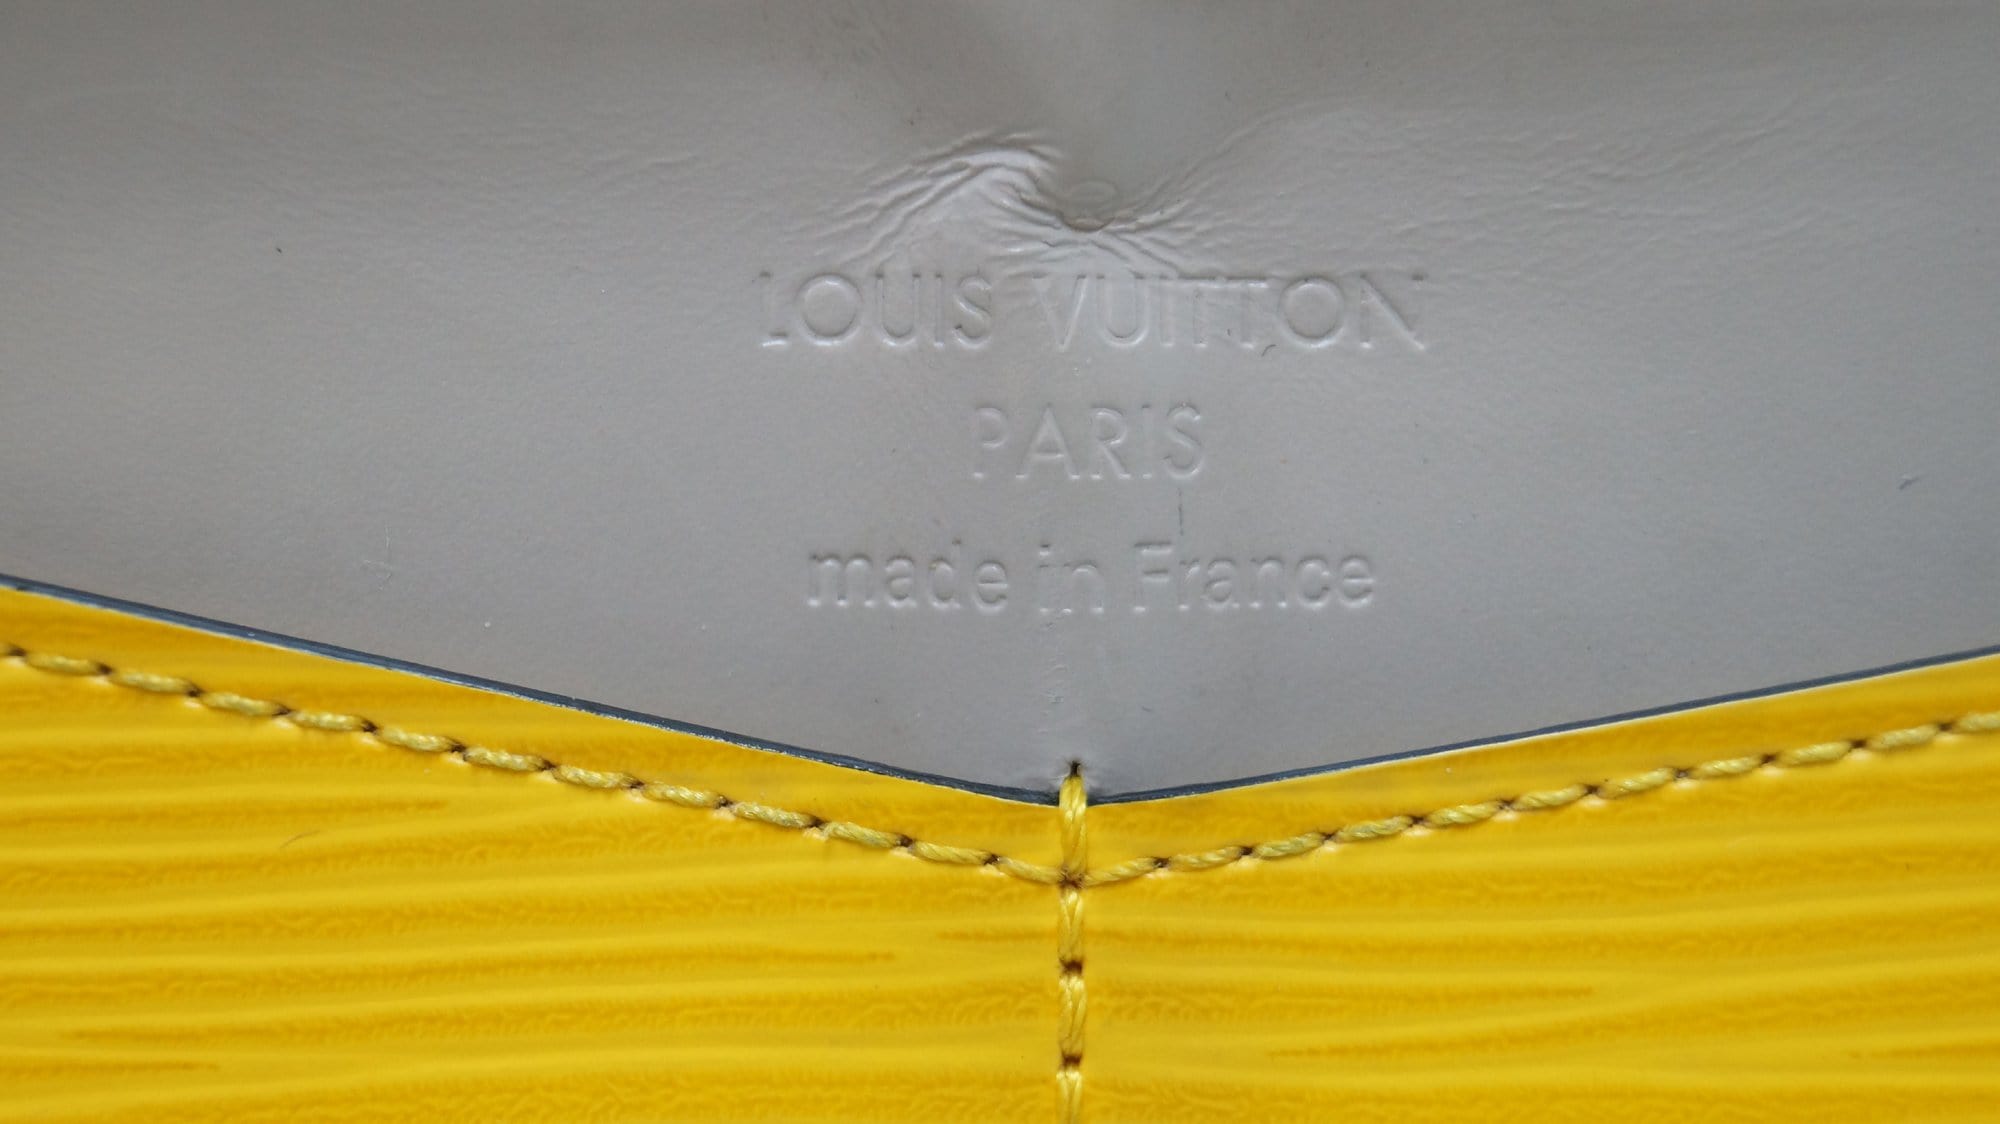 Louis Vuitton Portefeuille comète – The Brand Collector